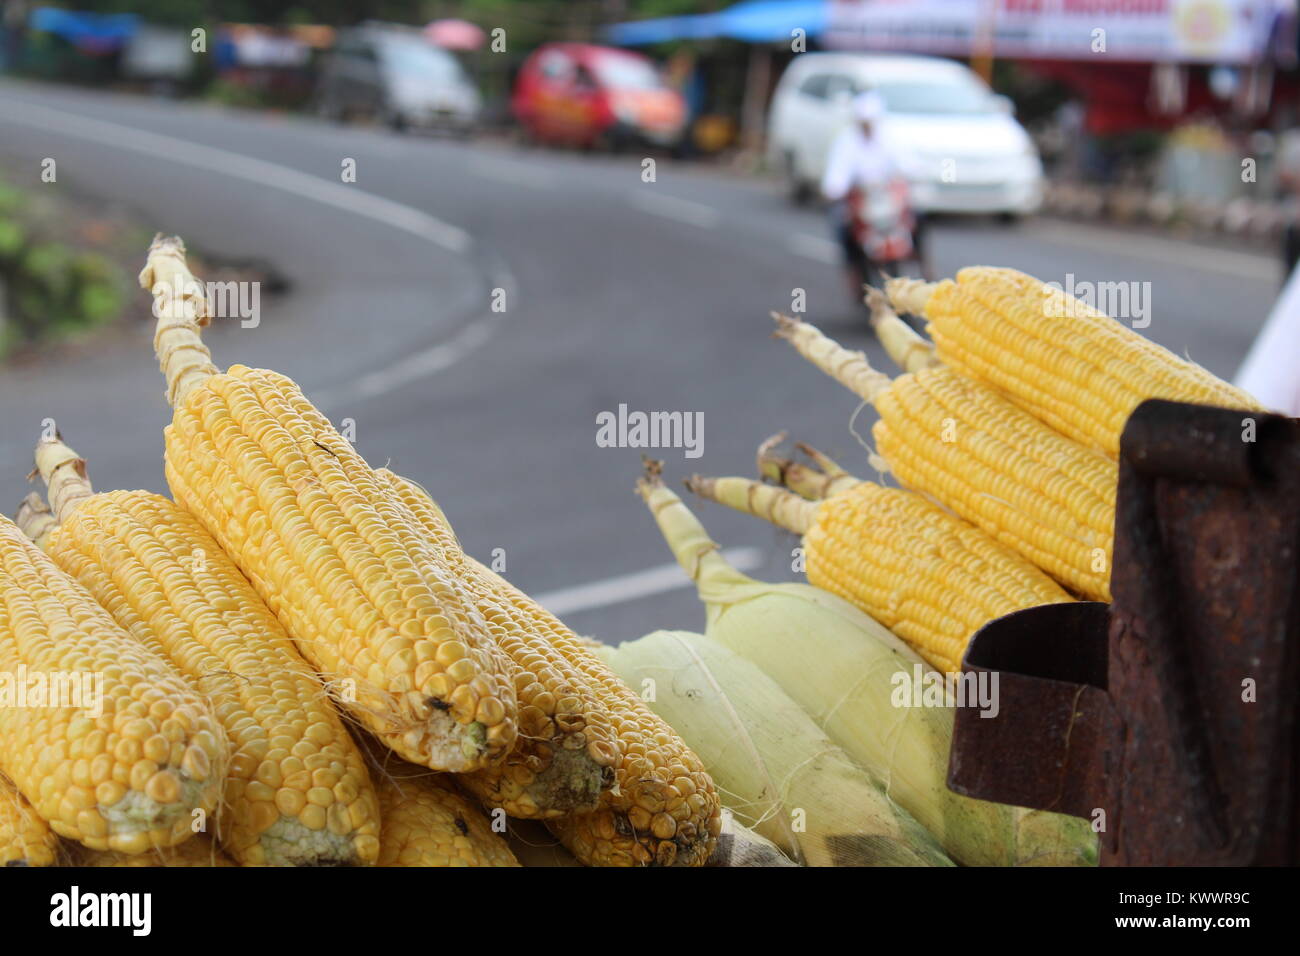 Las semillas de maíz con naturales de color amarillo con el fondo y blury bonito modo retrato te encantará este alimento de la fotografía. Foto de stock